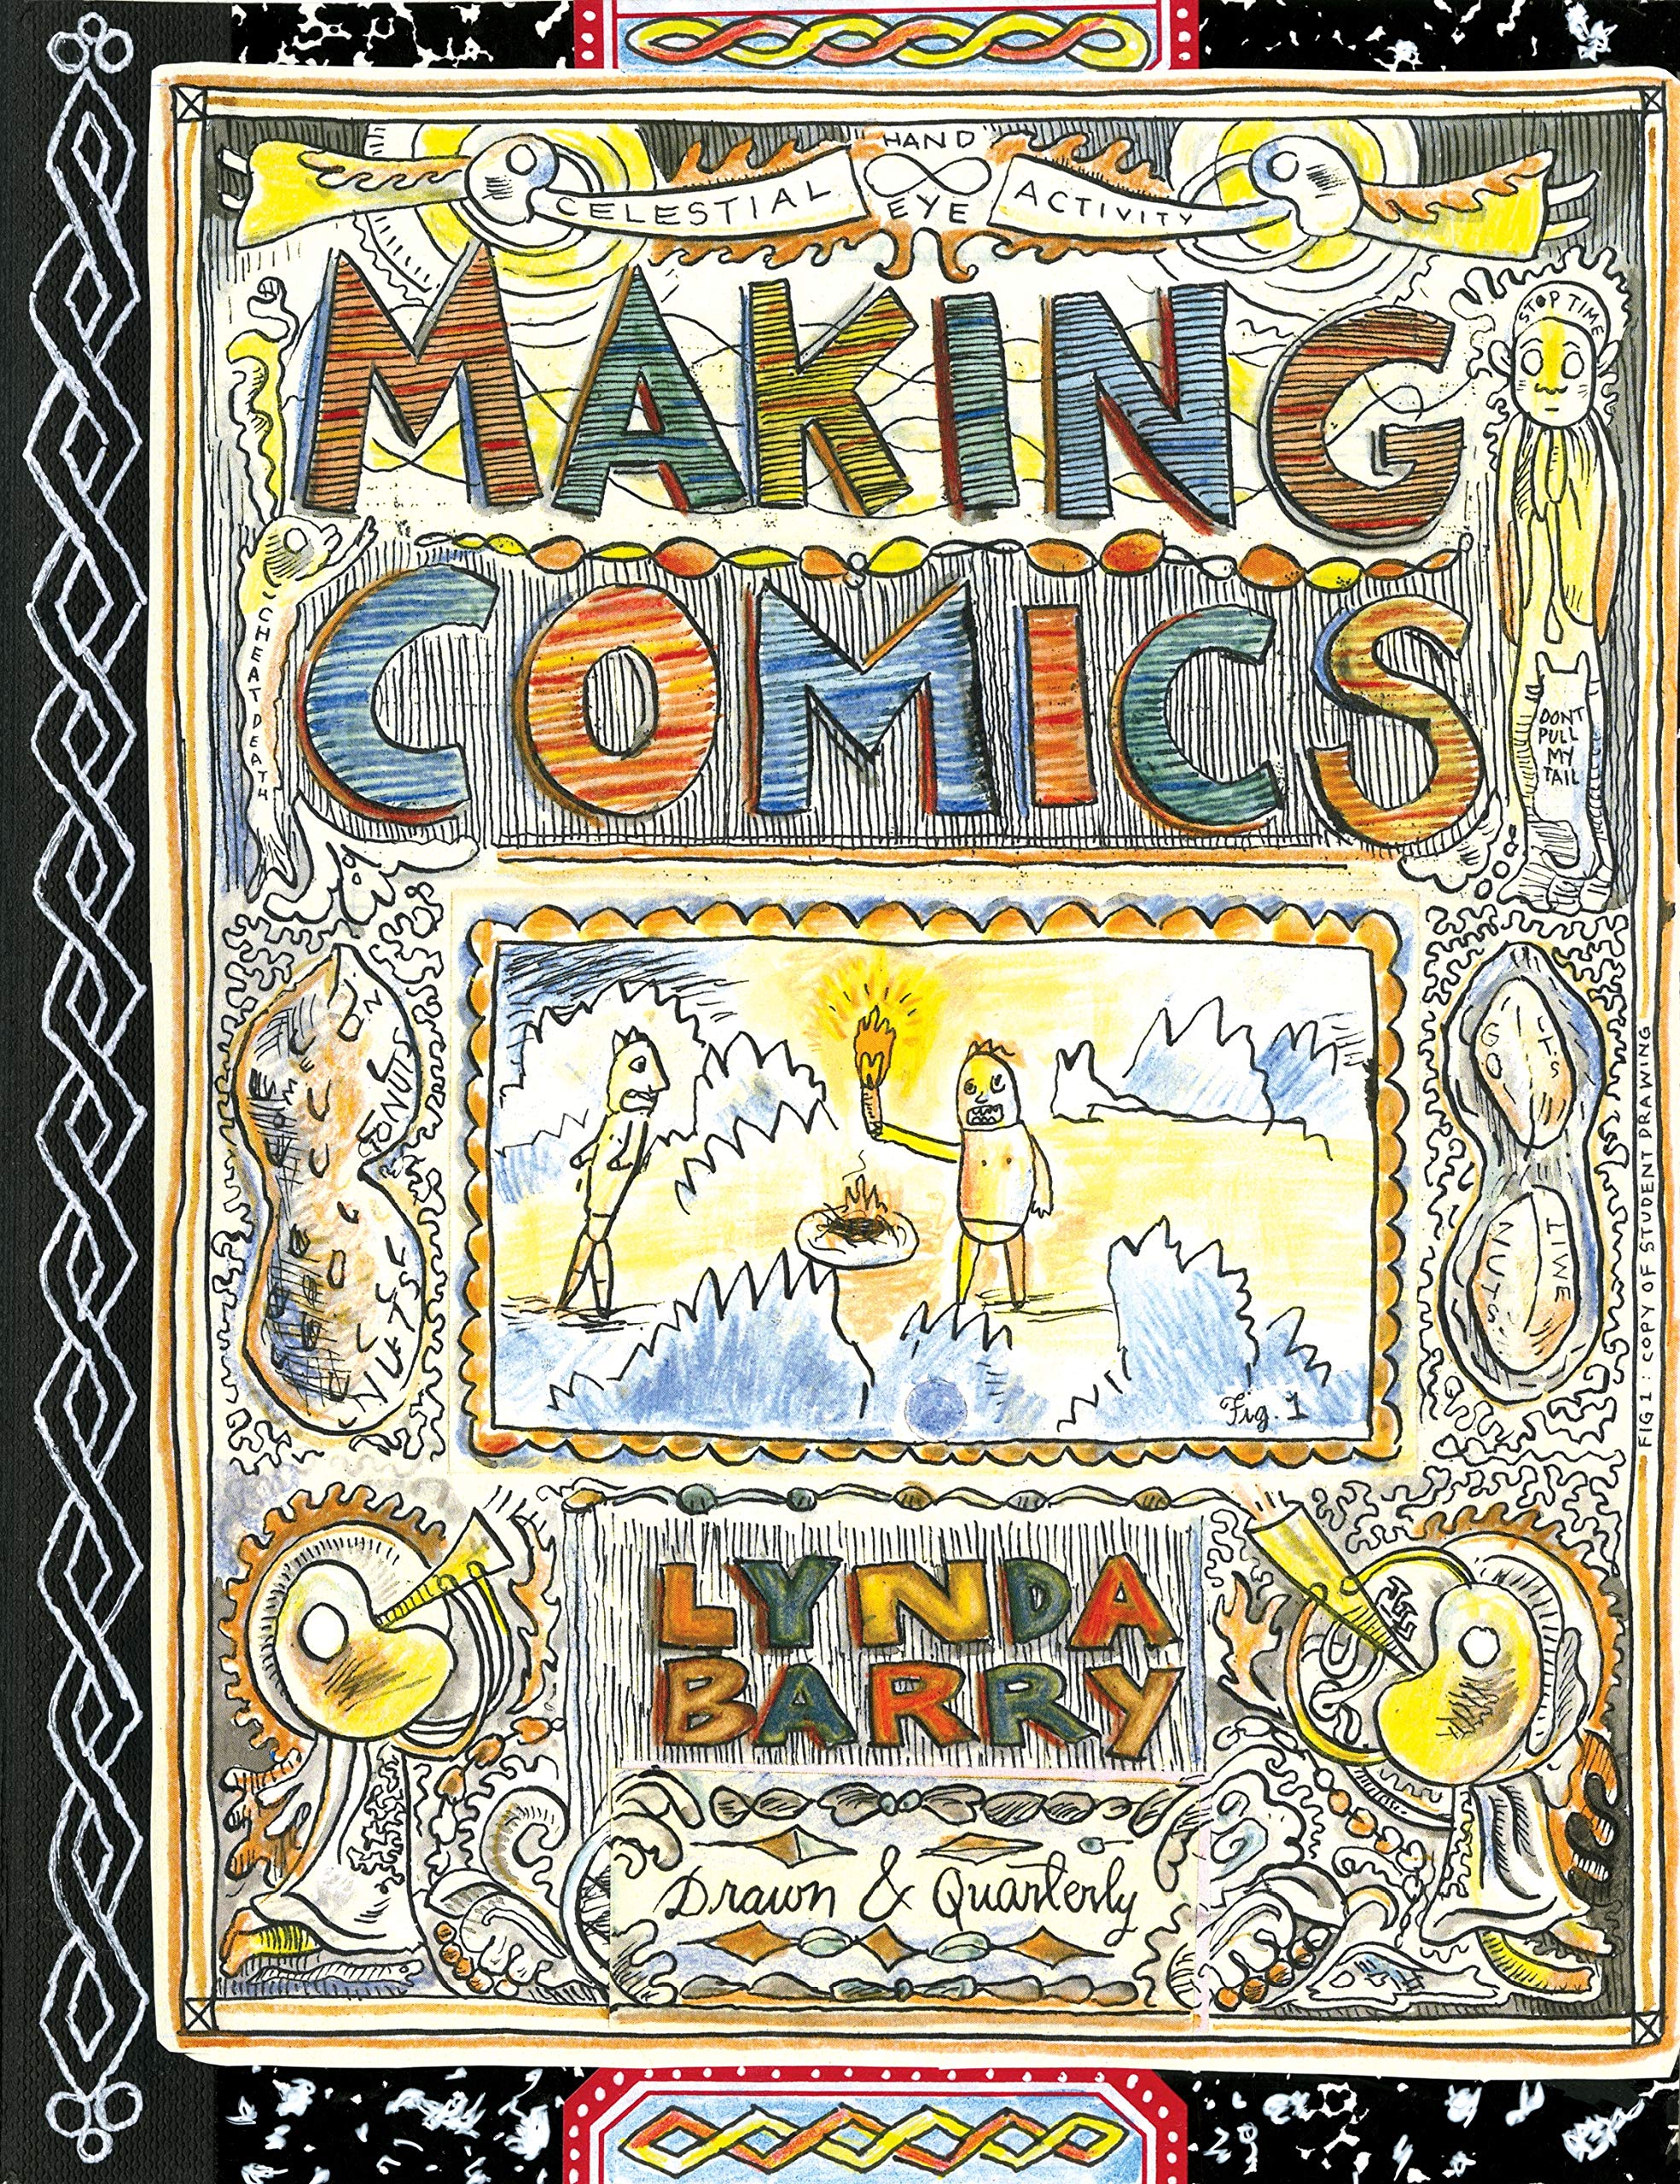 Graphic Novels for Fall 2019: Making Comics